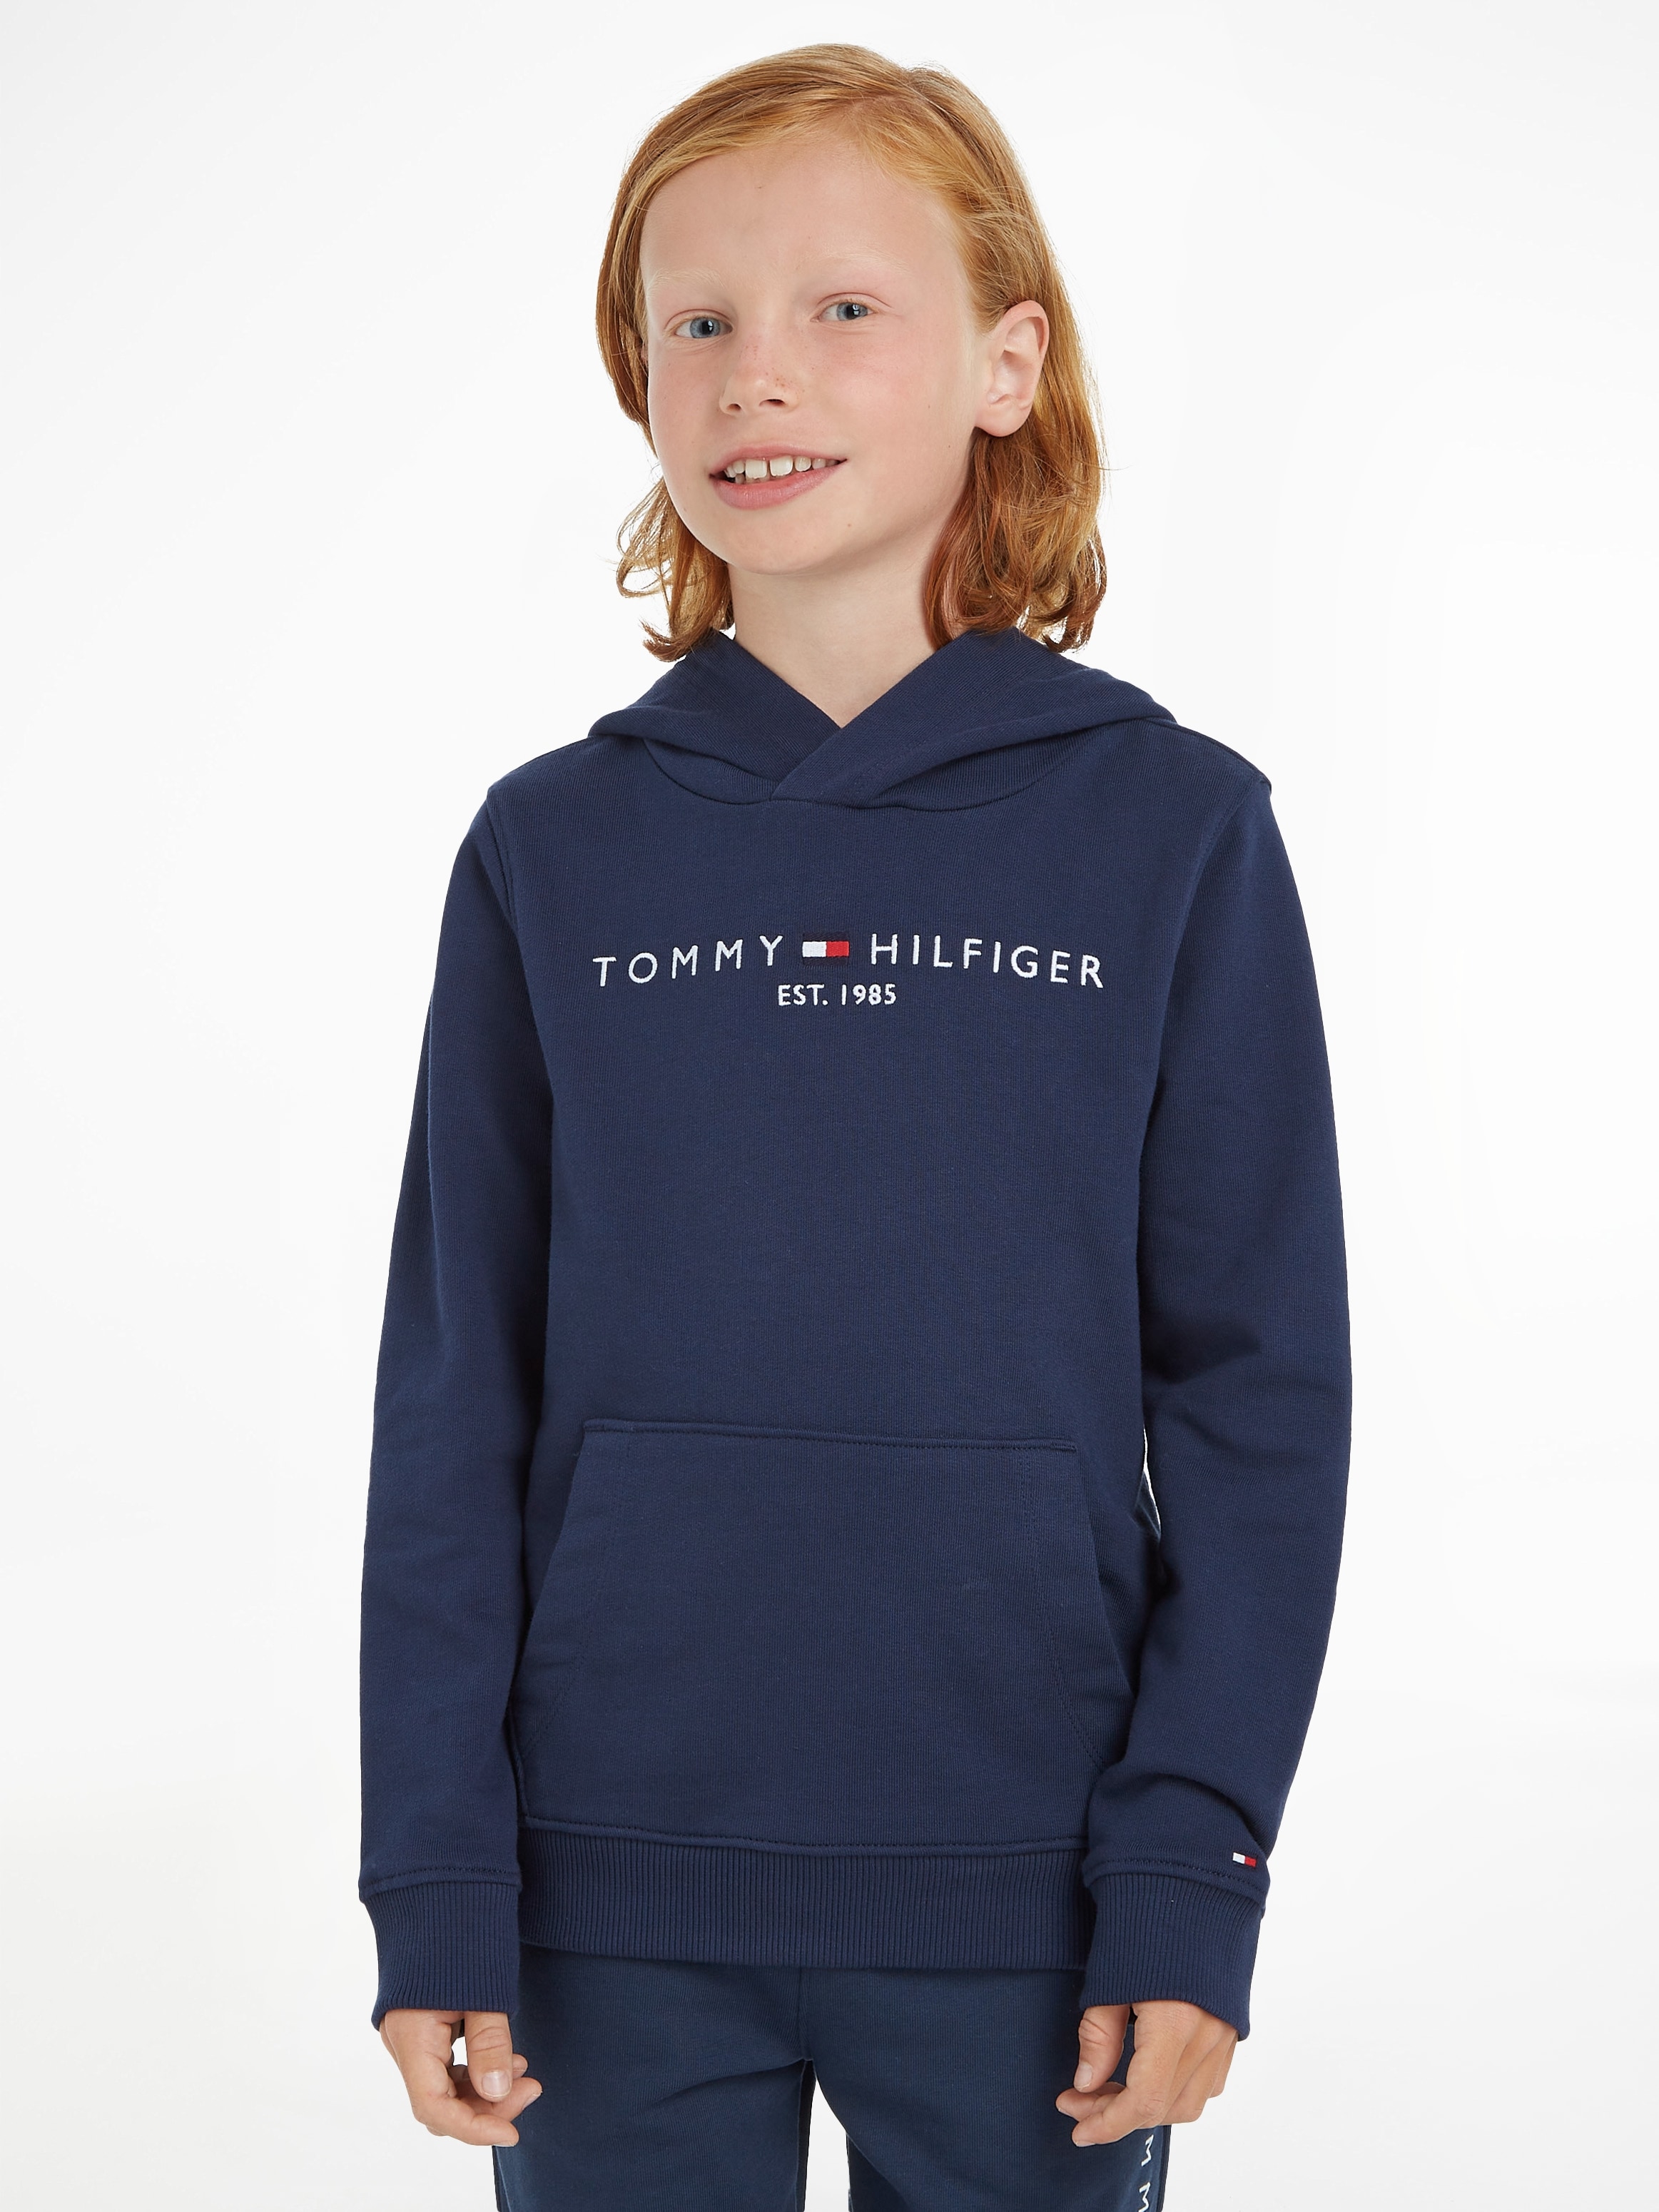 Tommy Hilfiger OTTO bei Kapuzensweatshirt Jungen Kinder Mädchen »ESSENTIAL Kids MiniMe,für und Junior HOODIE«, kaufen